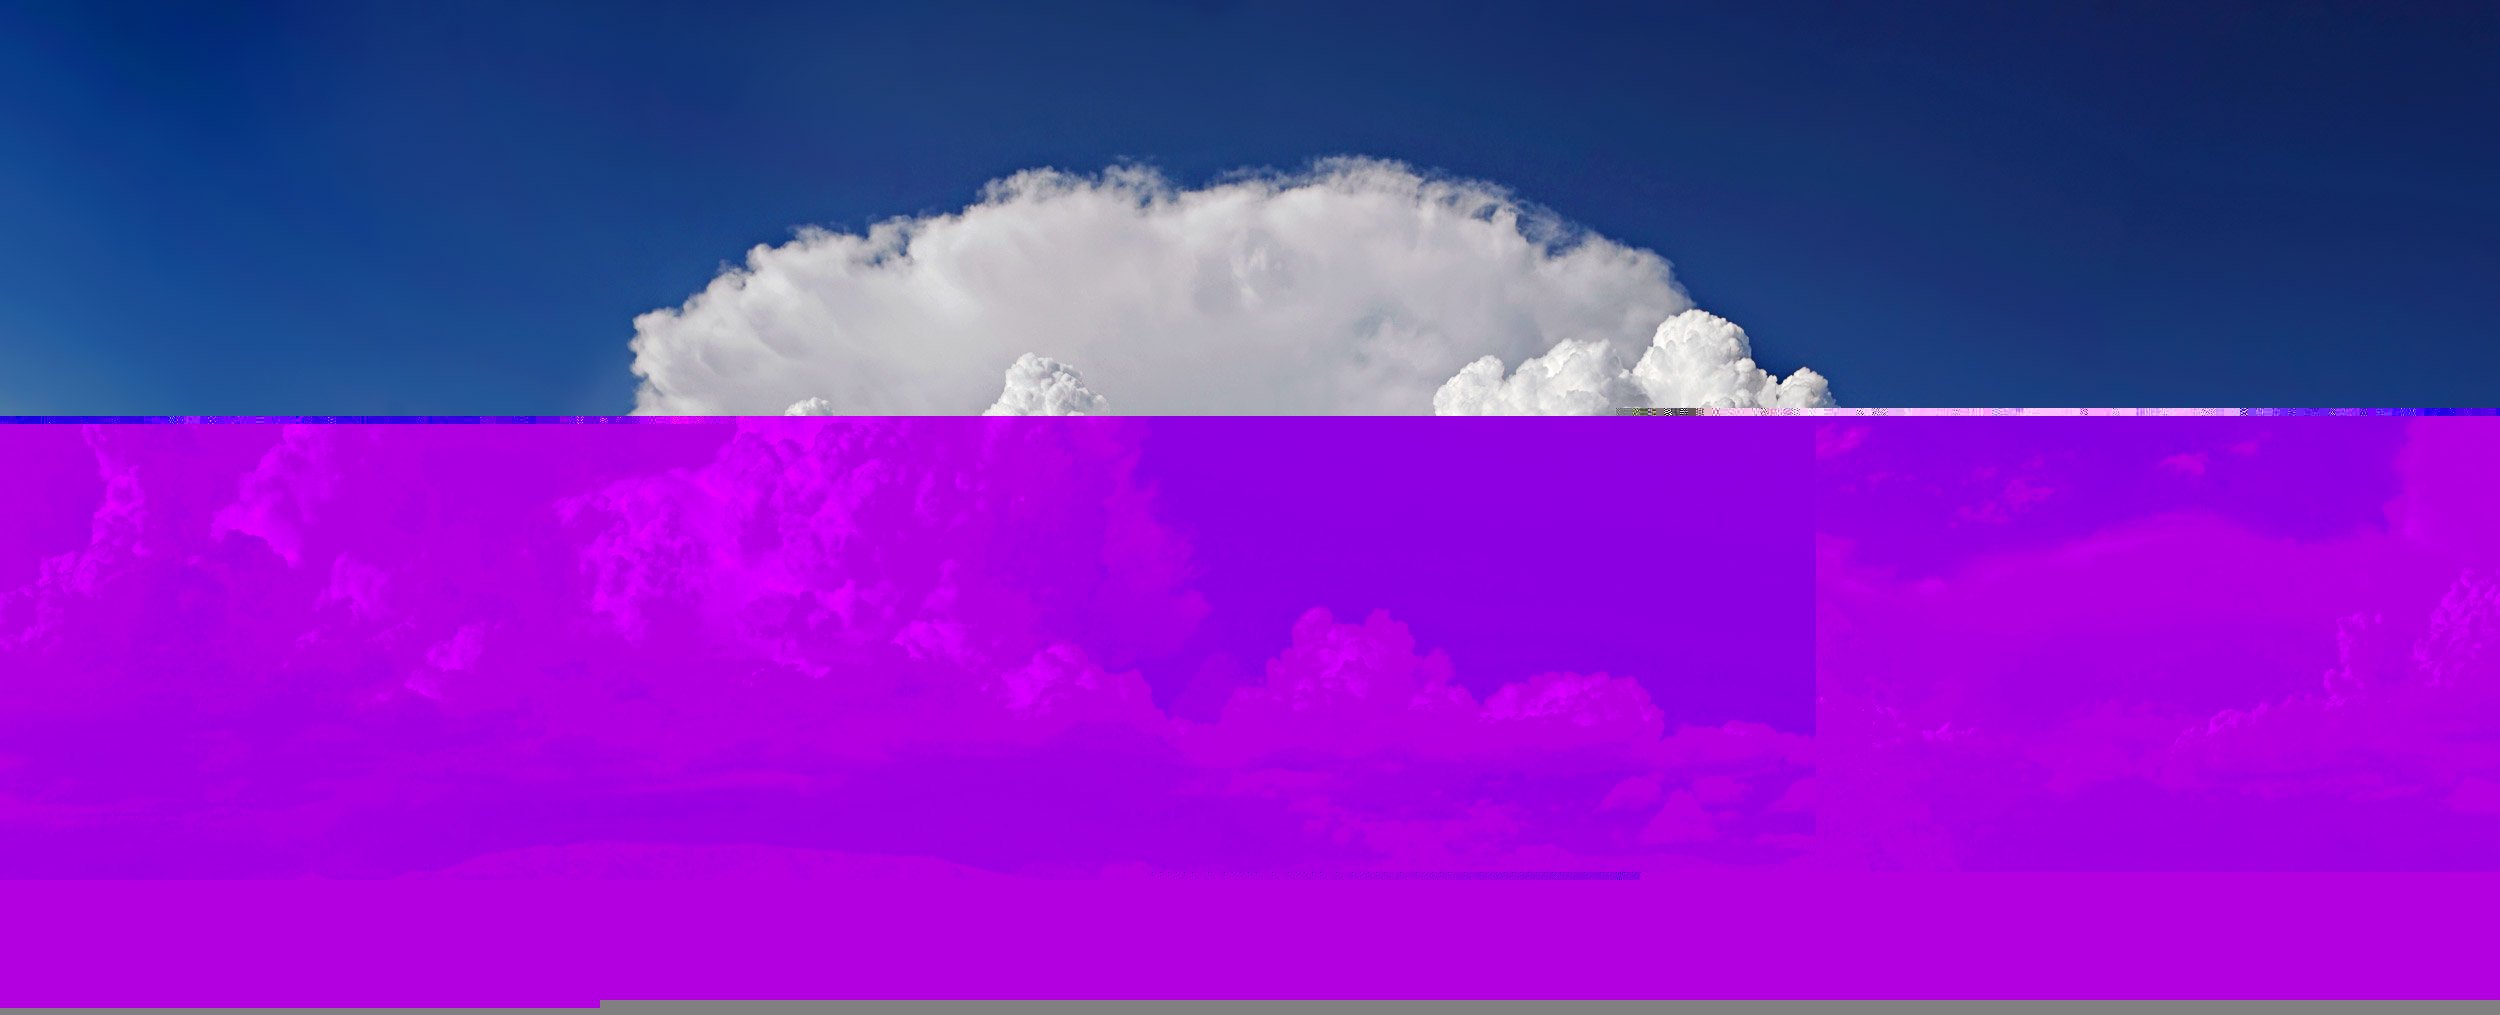 Файл:Cumulonimbus clouds.jpg